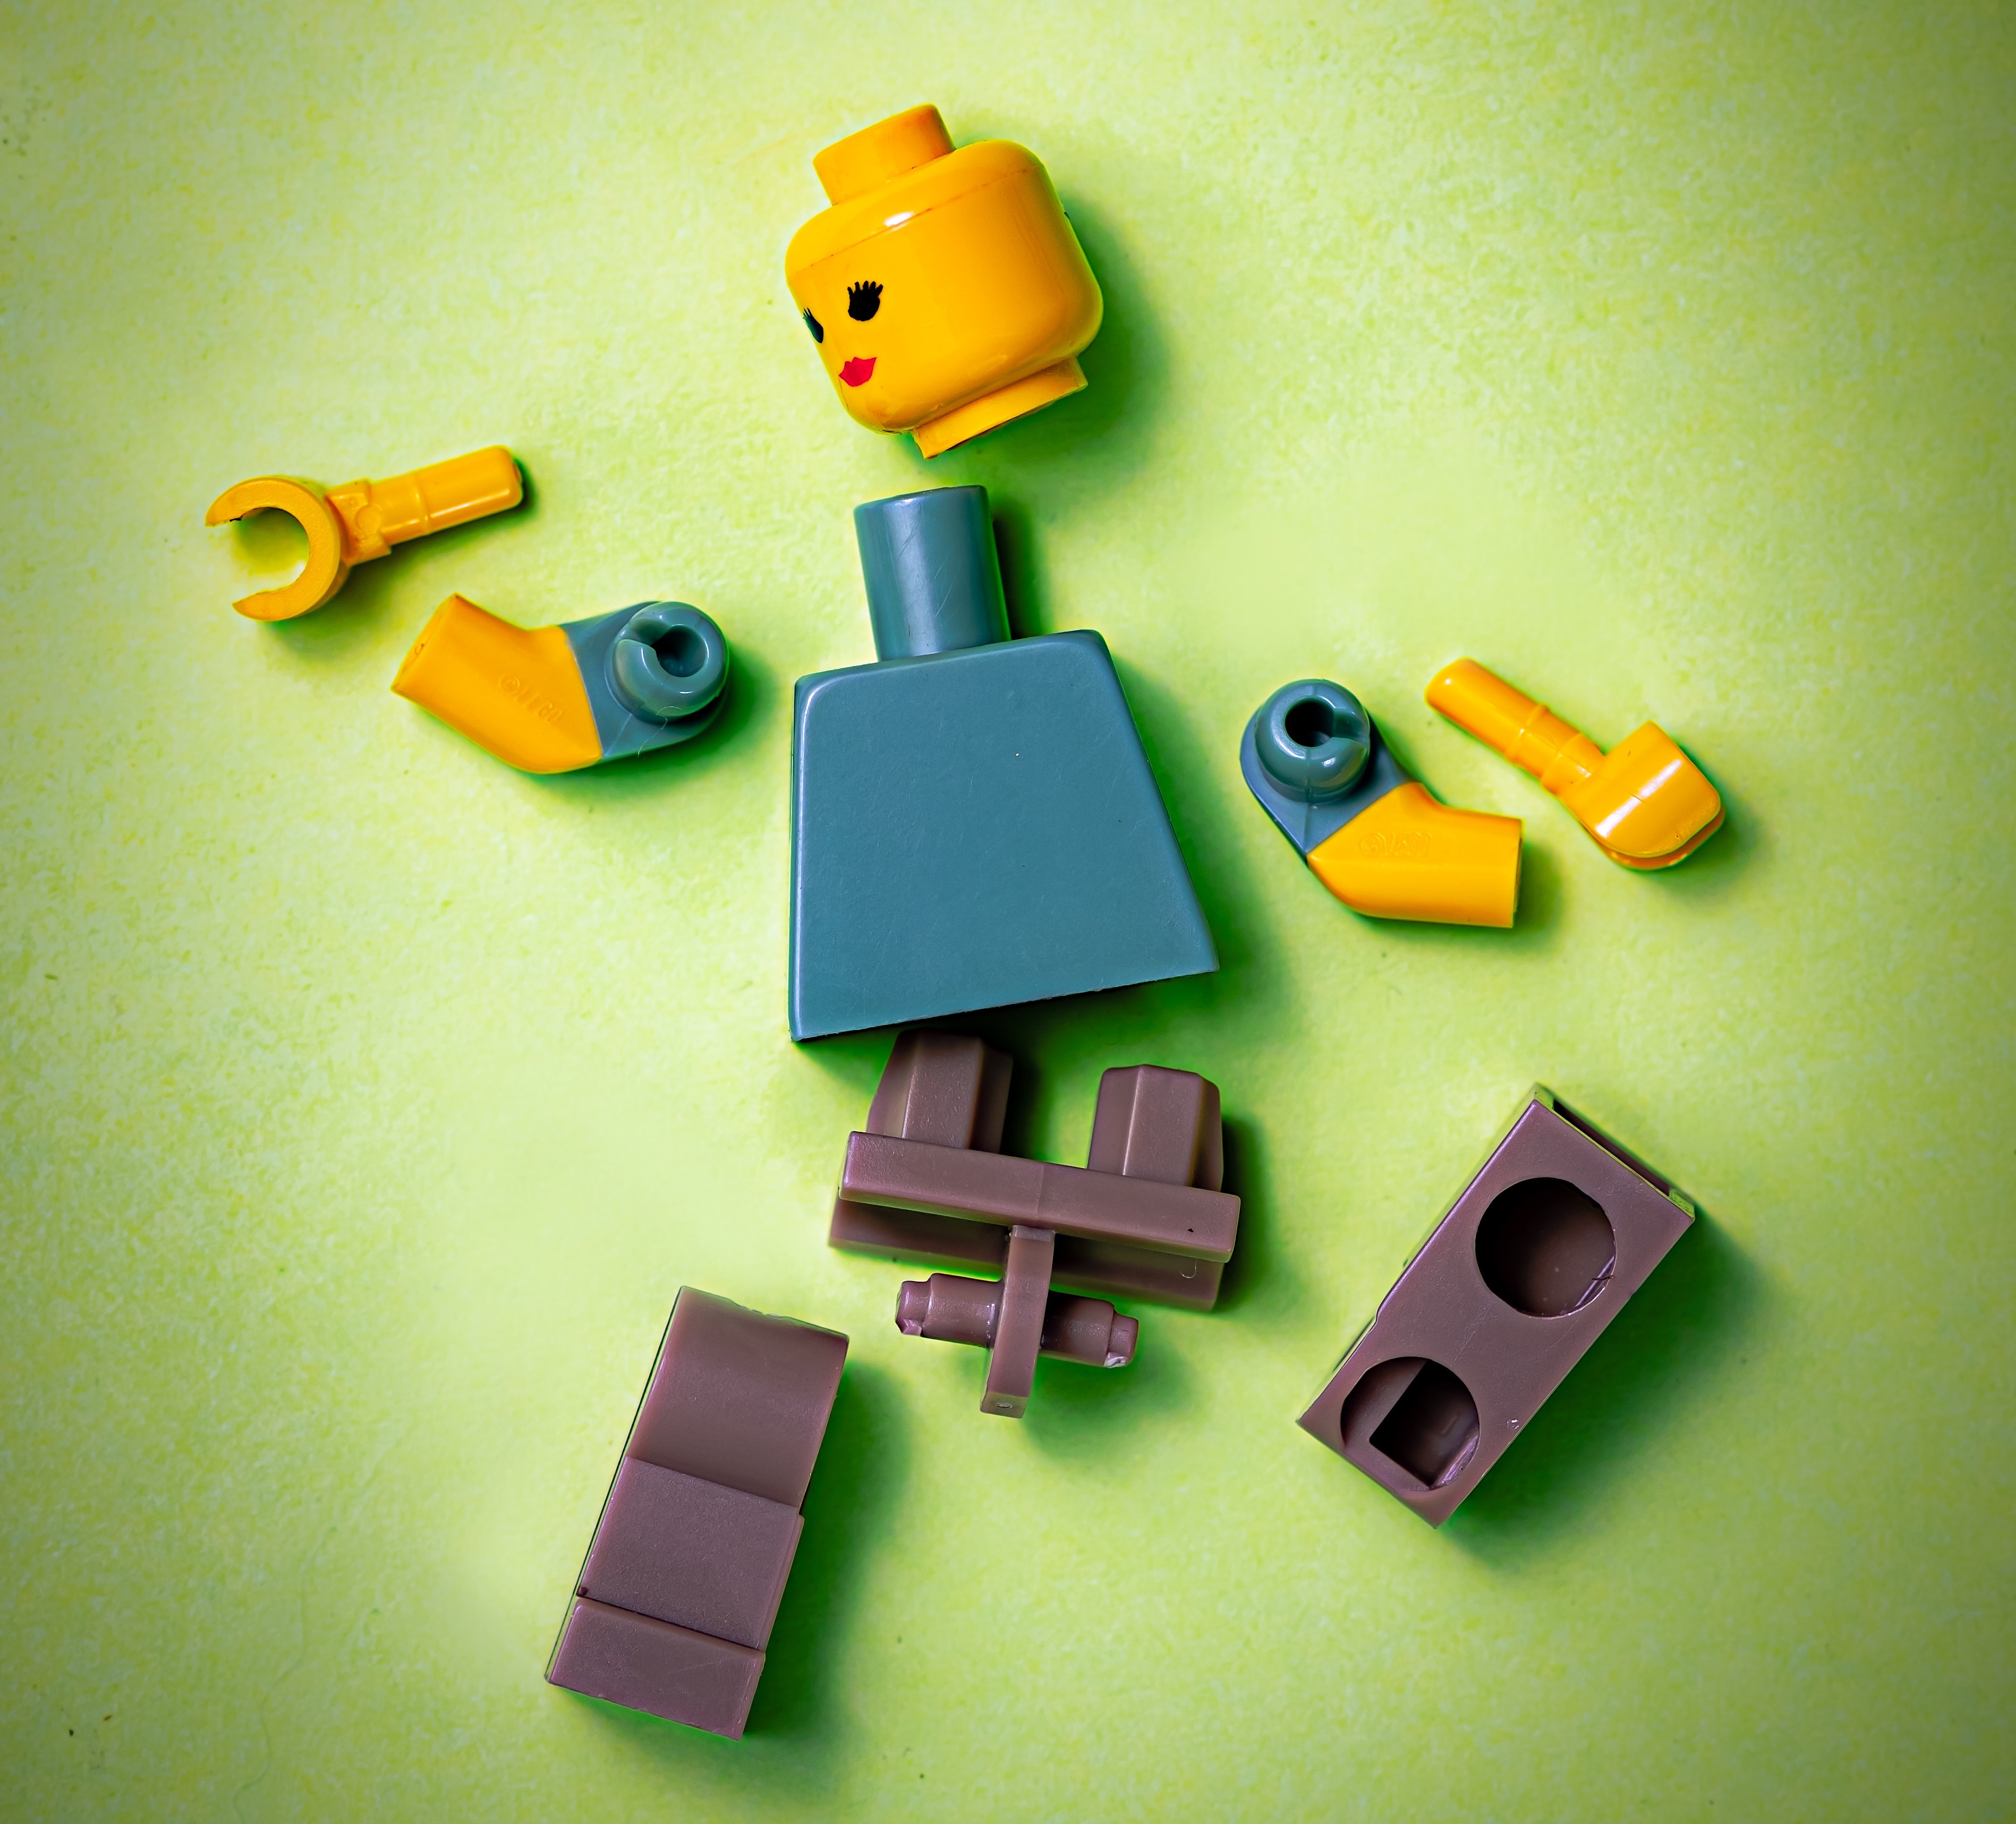 Lego person broken apart